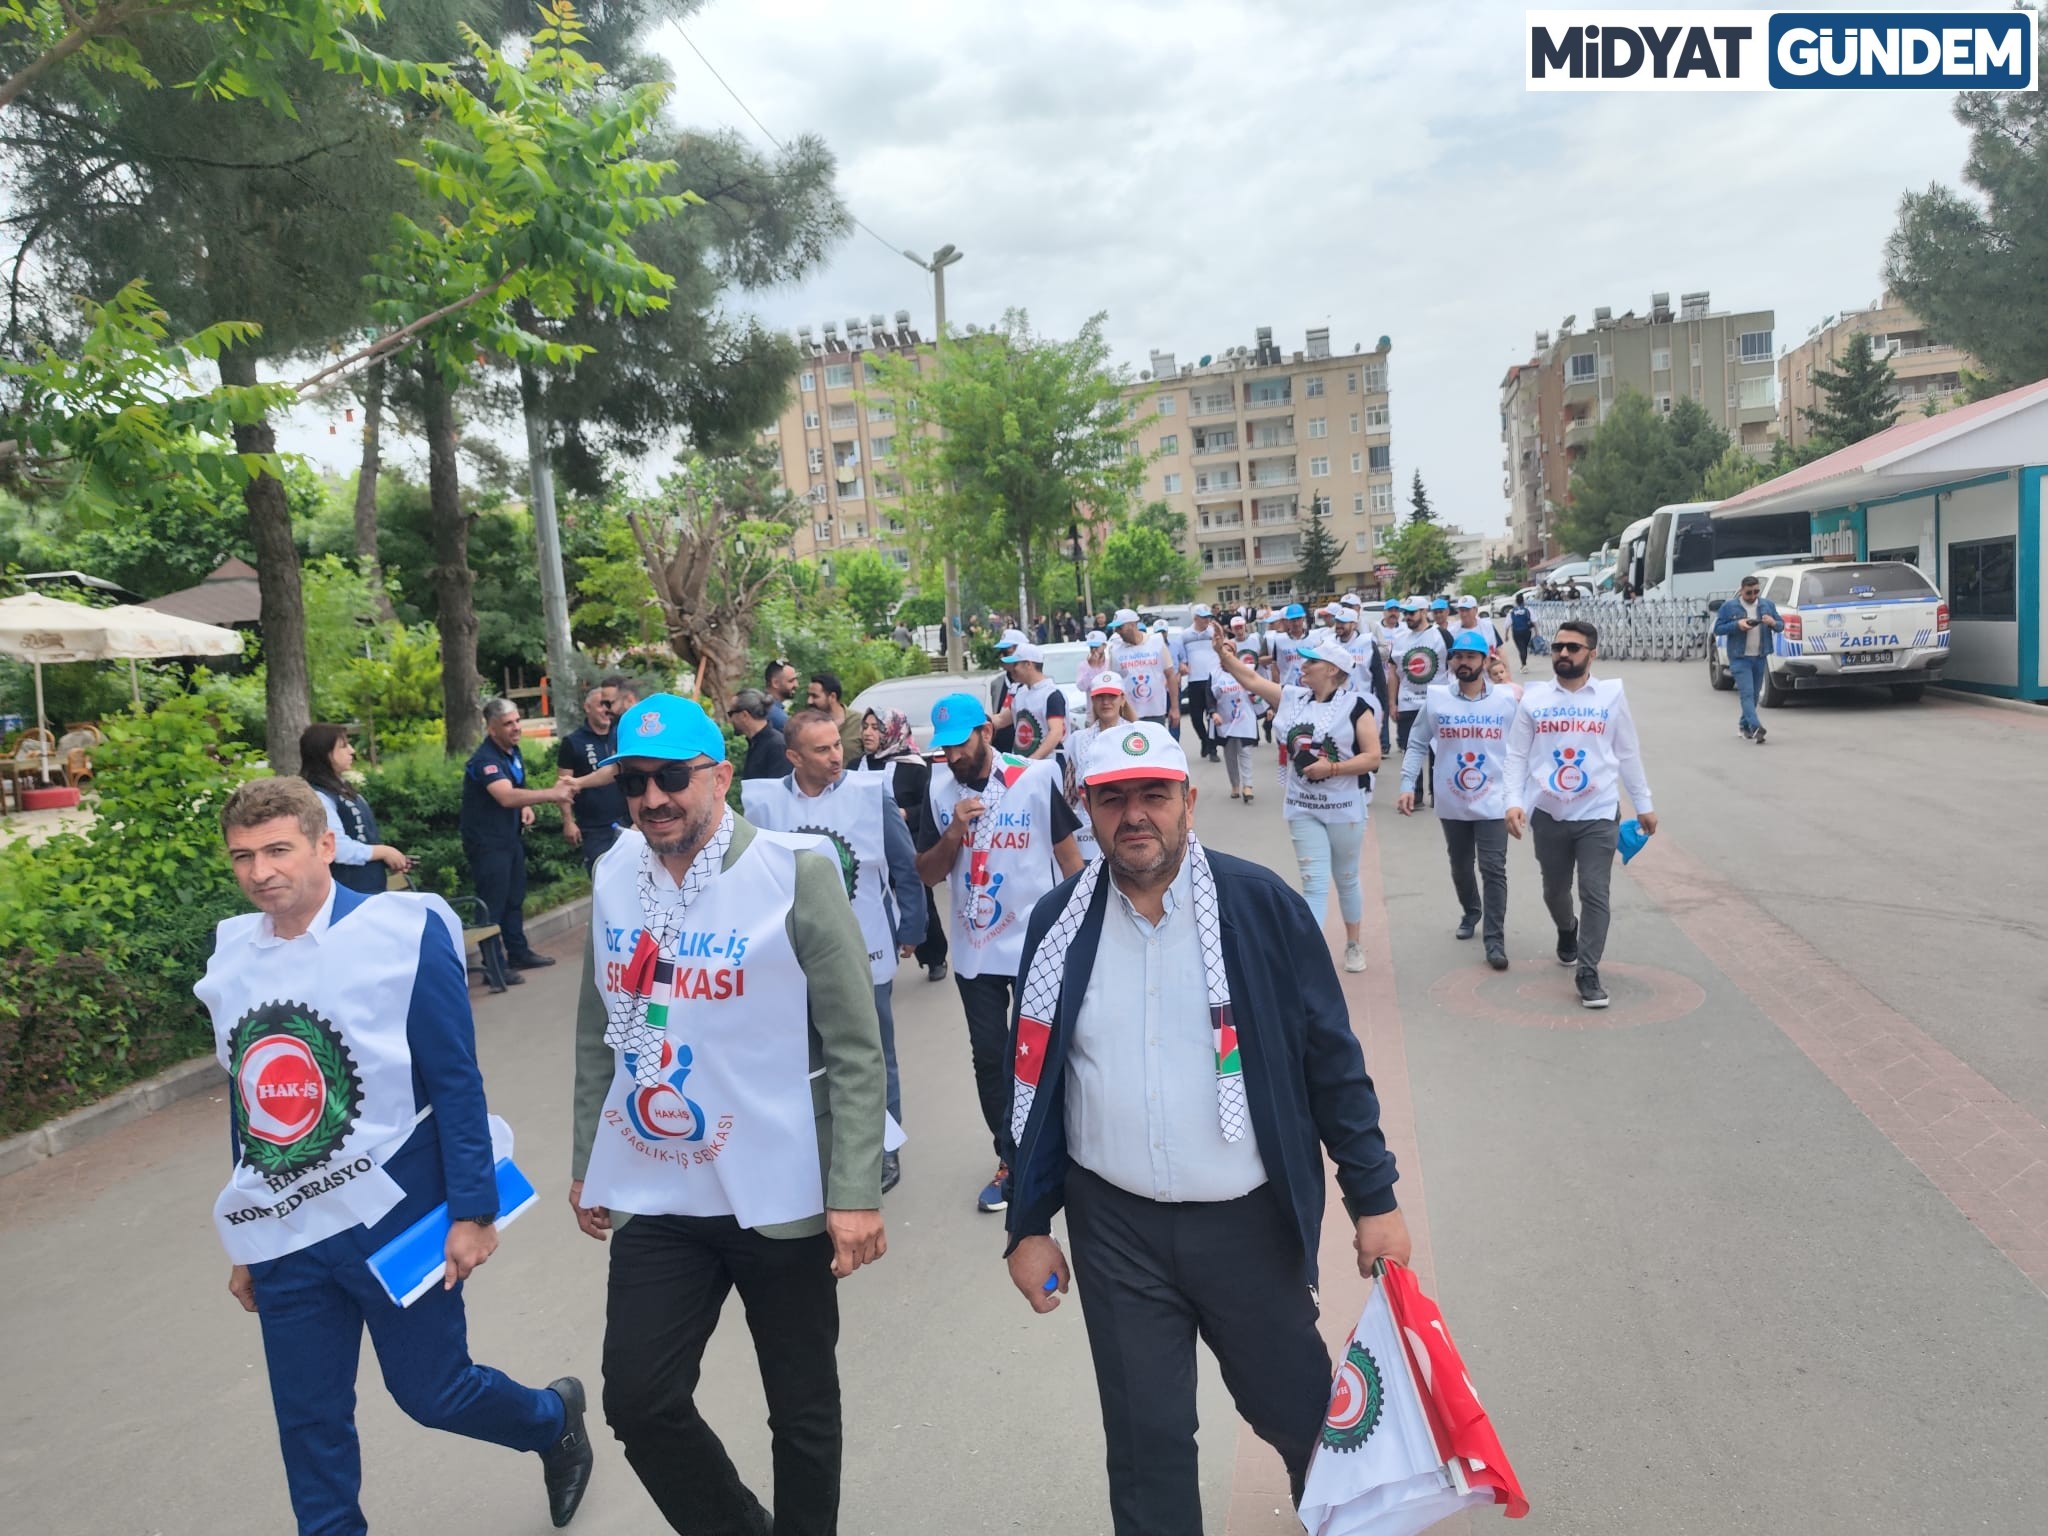 Mardin’den Hak İş'ten 1 Mayıs Açıklaması 